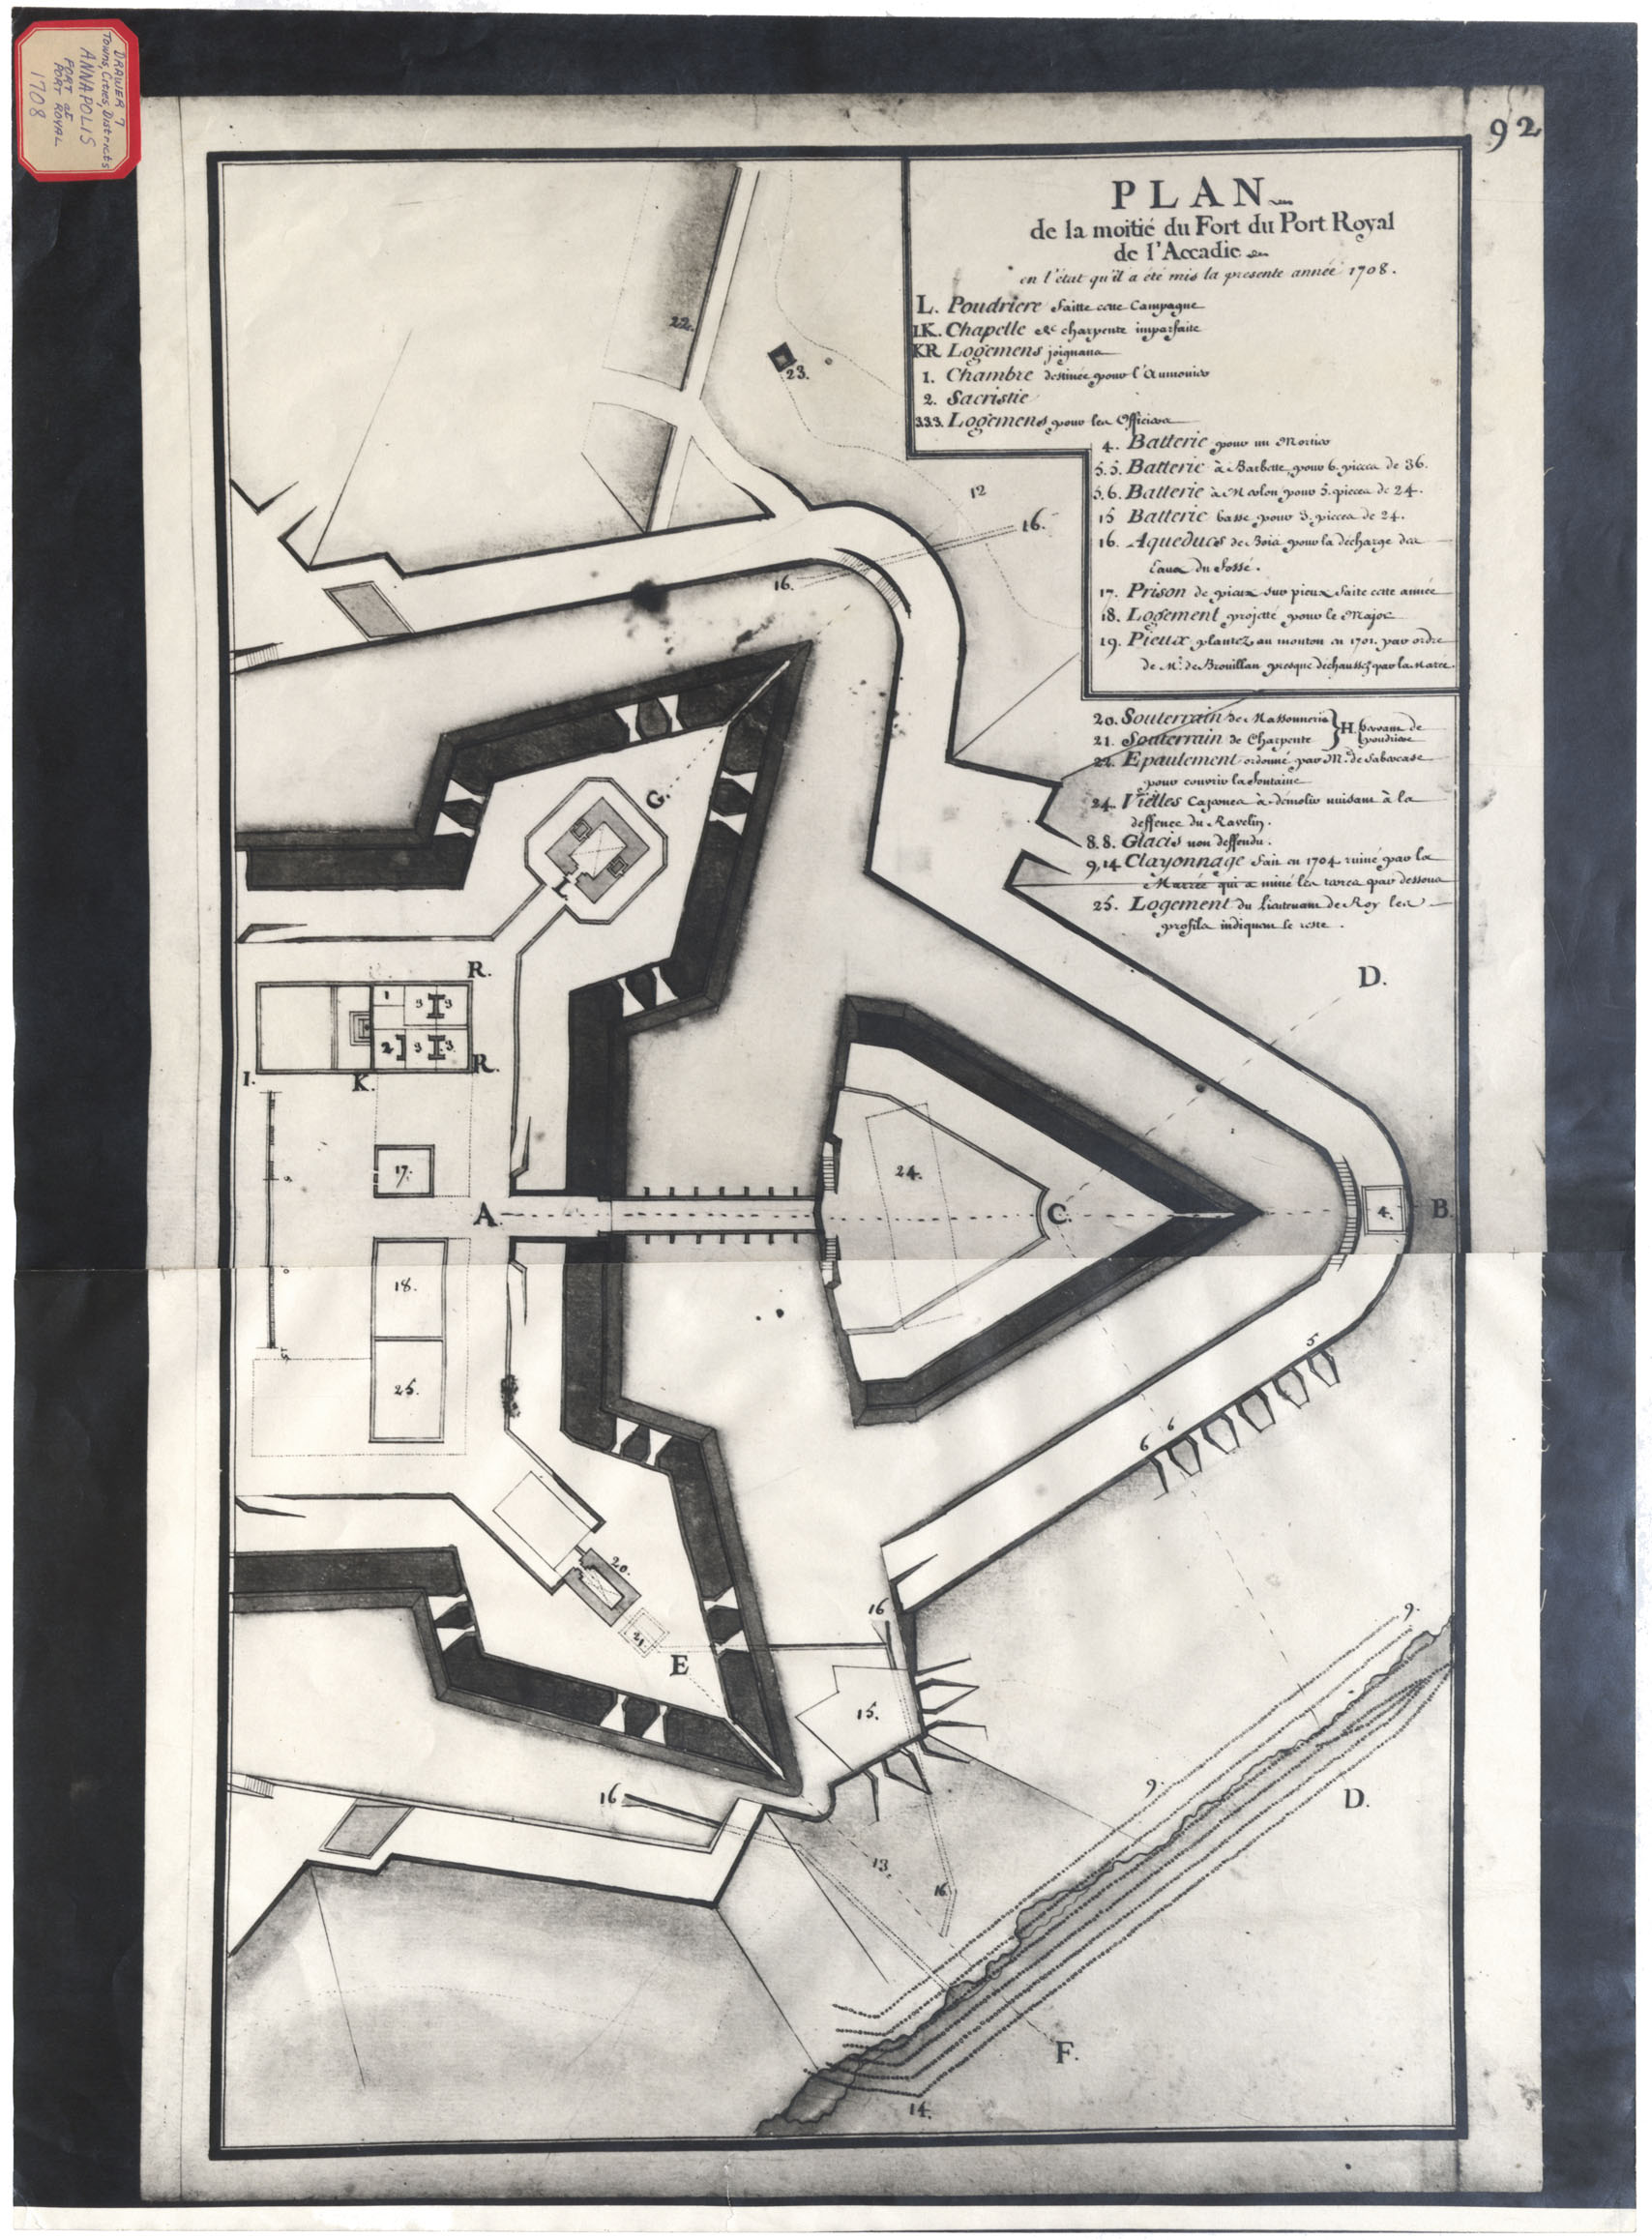 Plan de la moitea du Fort du Port Royal de l'Accadie